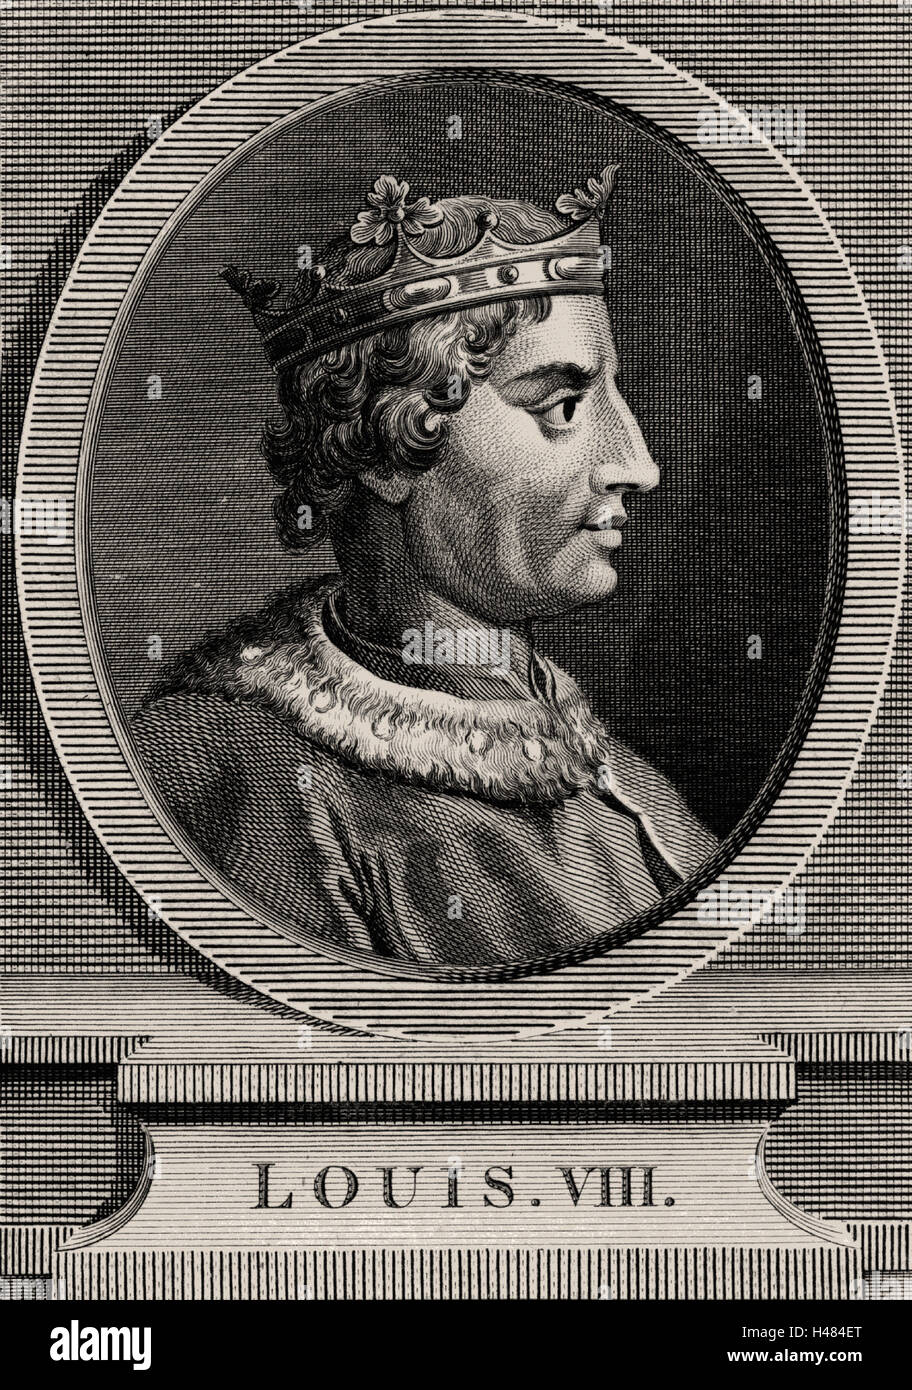 Louis VIII, el León (1187-1226), un miembro de la dinastía de los Capetos, rey de Francia desde 1223 Foto de stock